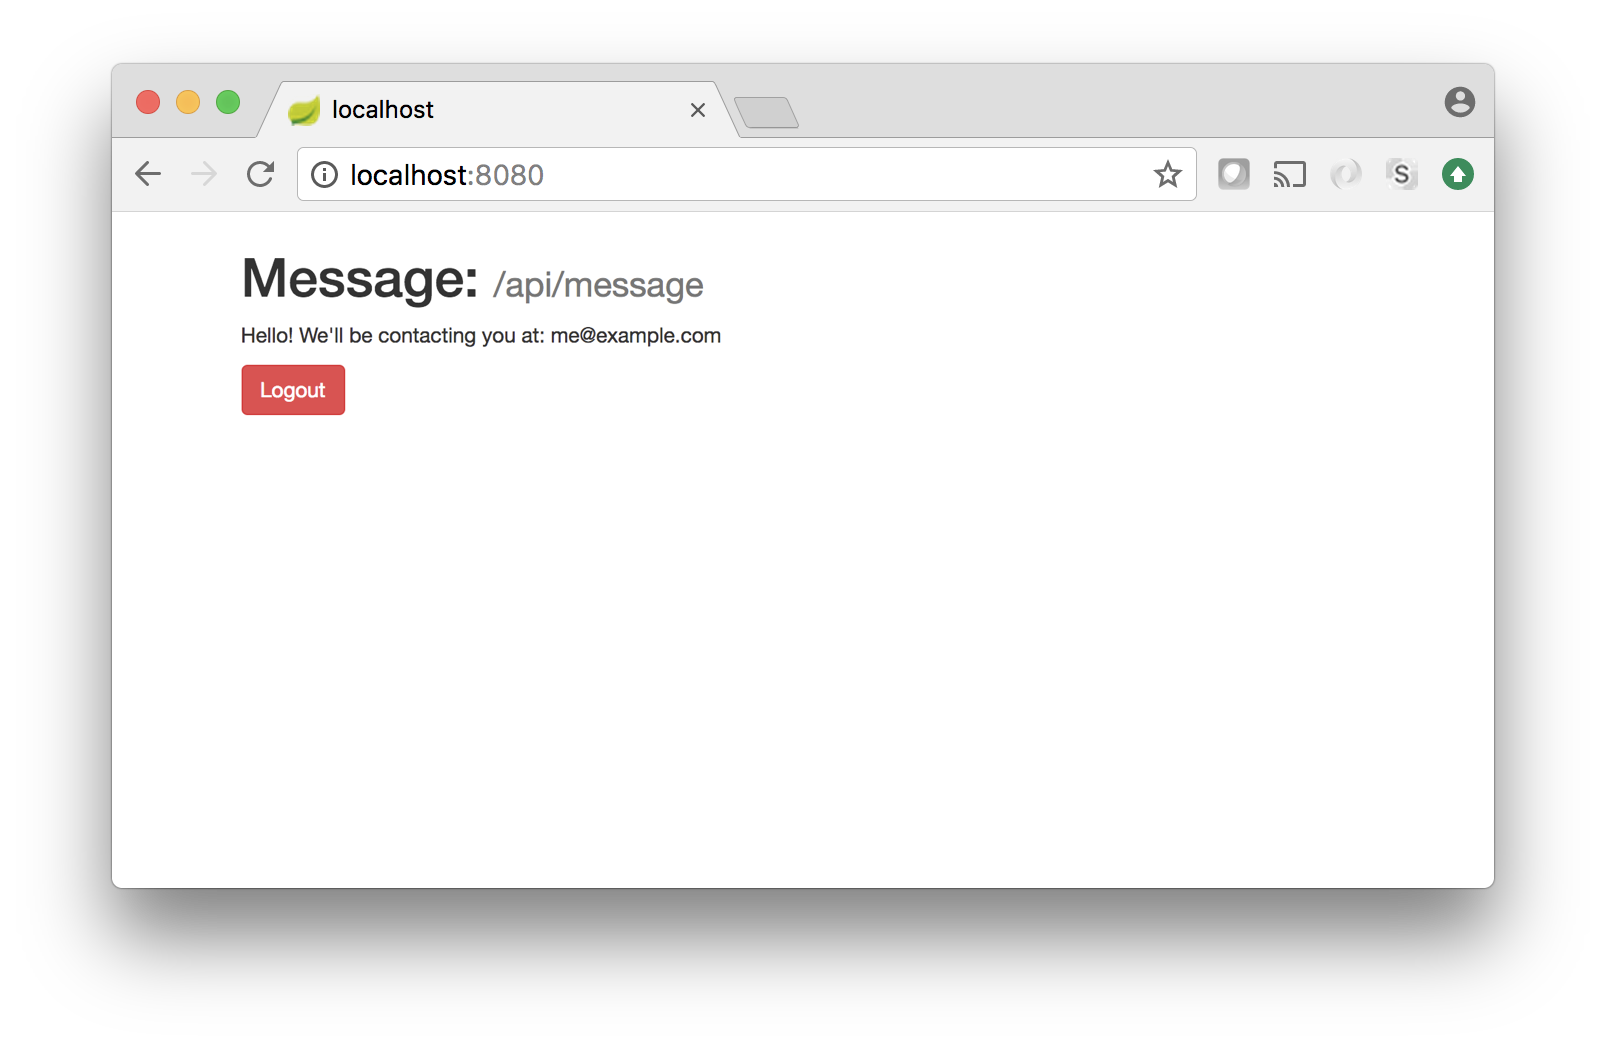 Post login message showing API response